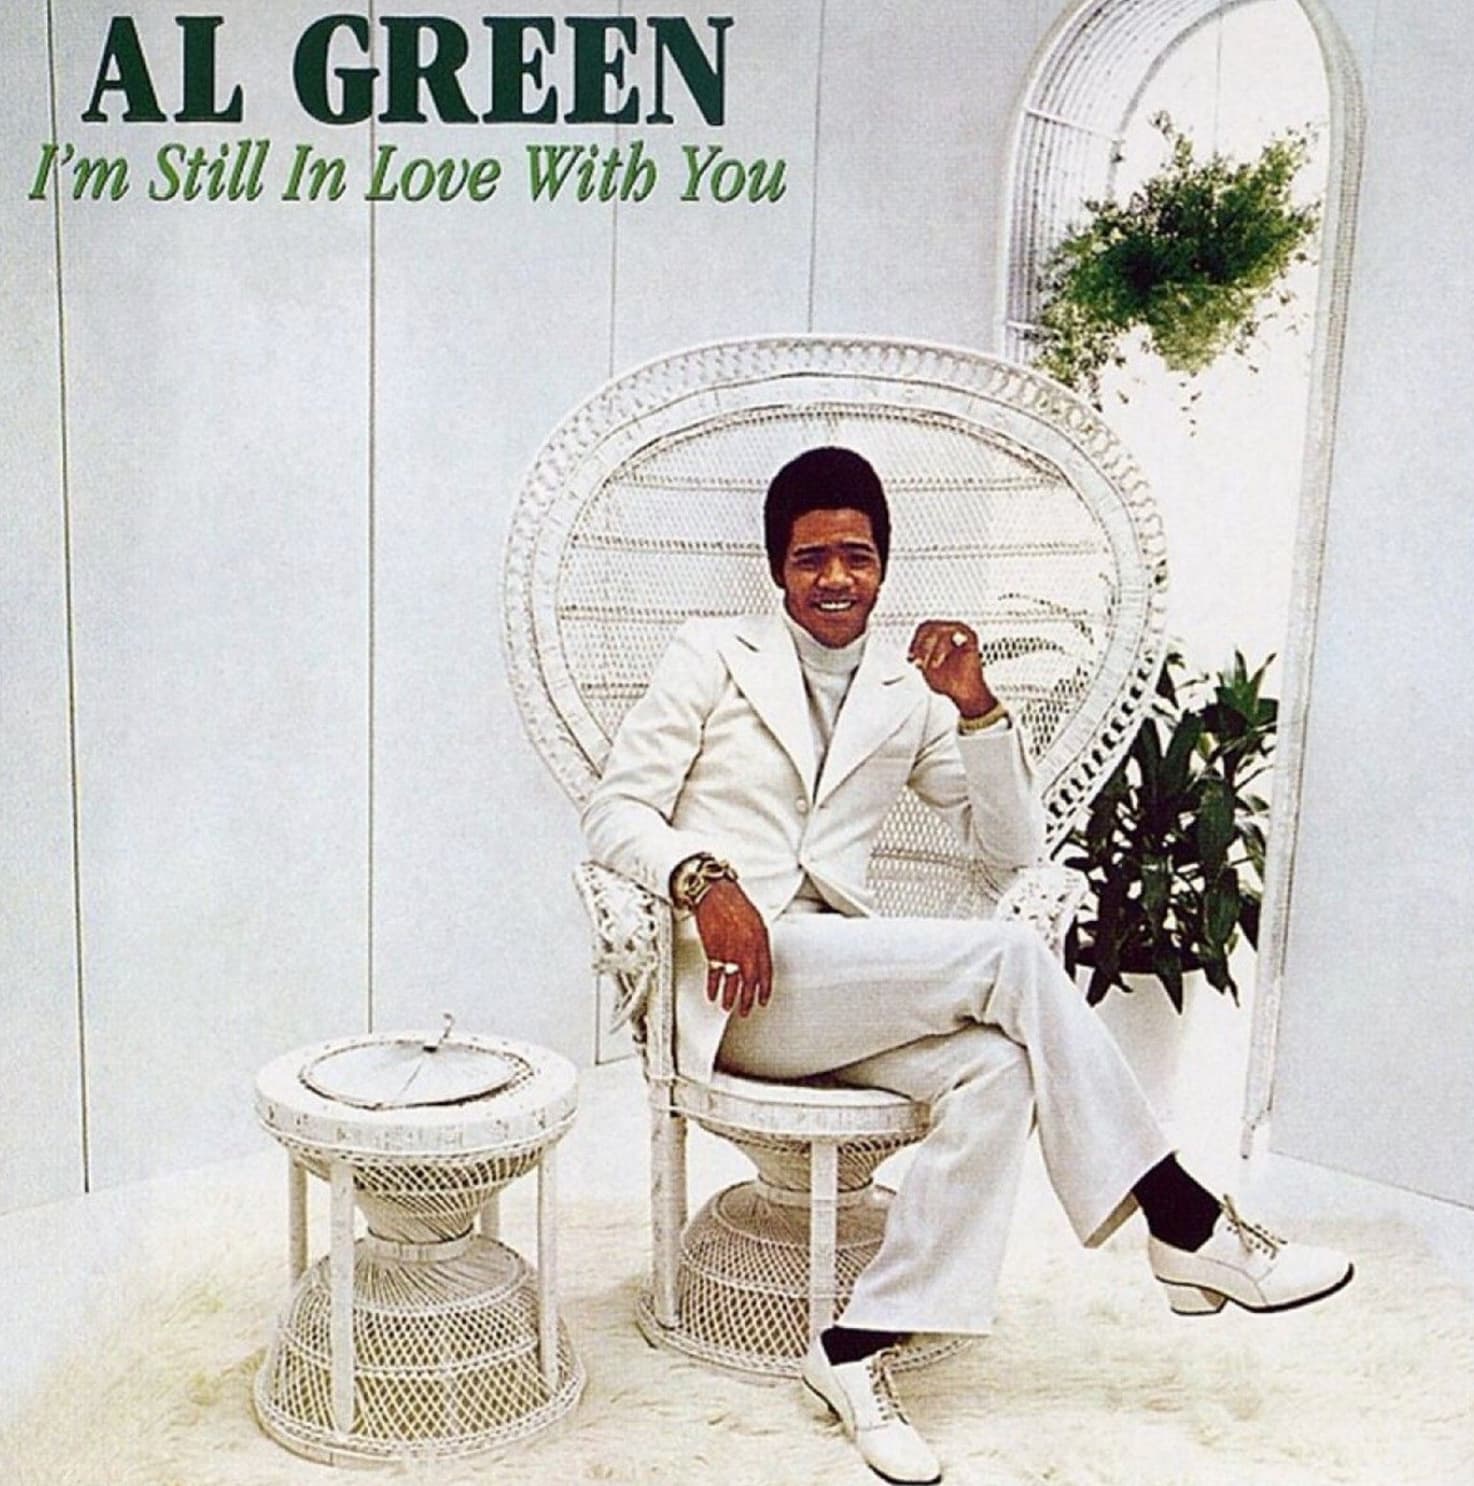 al green im still in love with you - Al Green I'm Still In Love With You